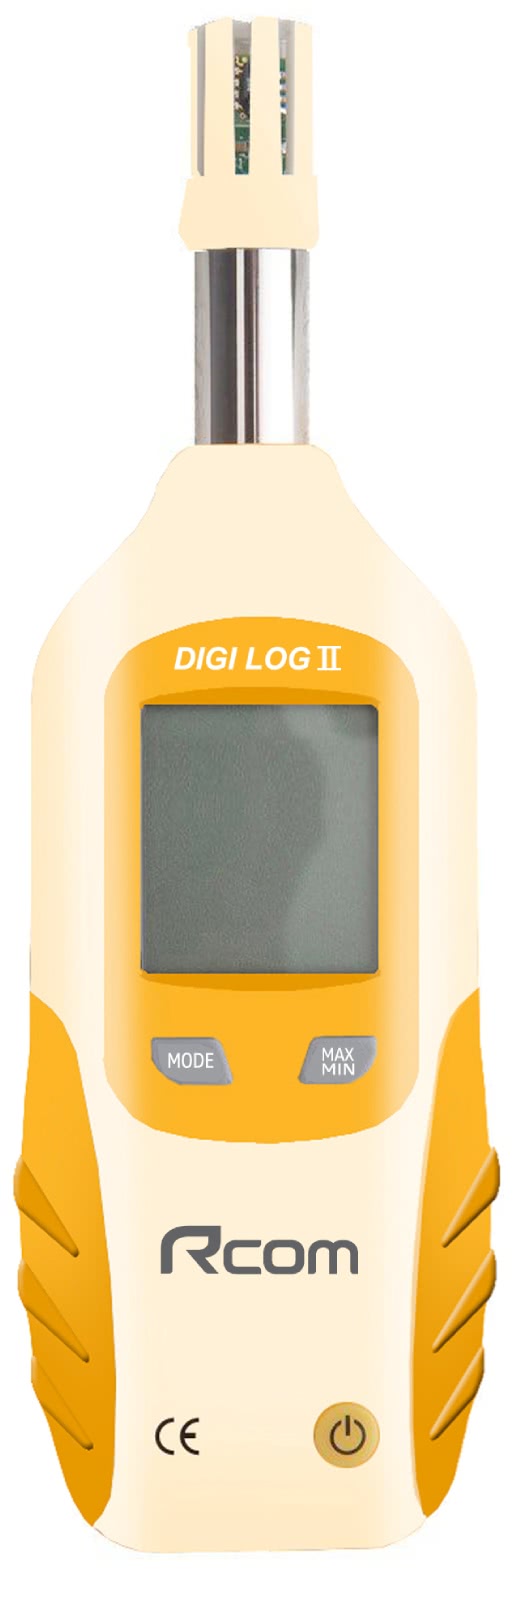 Temp humidity electronic wet bulb meter egg incubator Rcom digi log ii